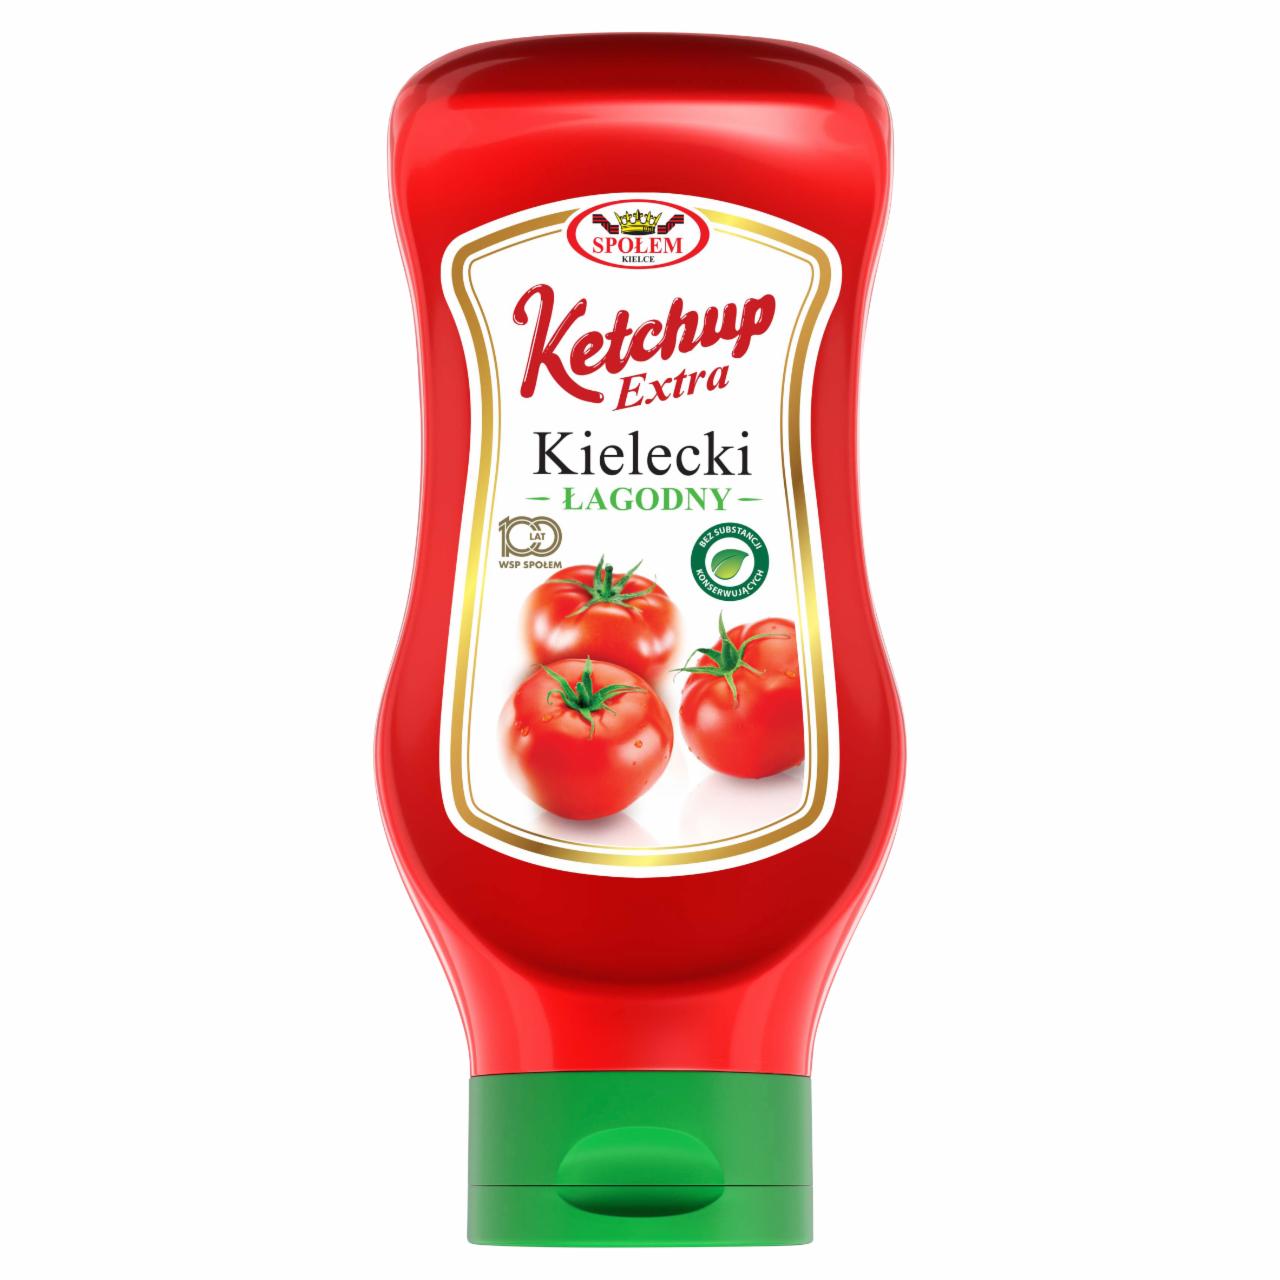 Zdjęcia - Ketchup Kielecki extra łagodny 500 g